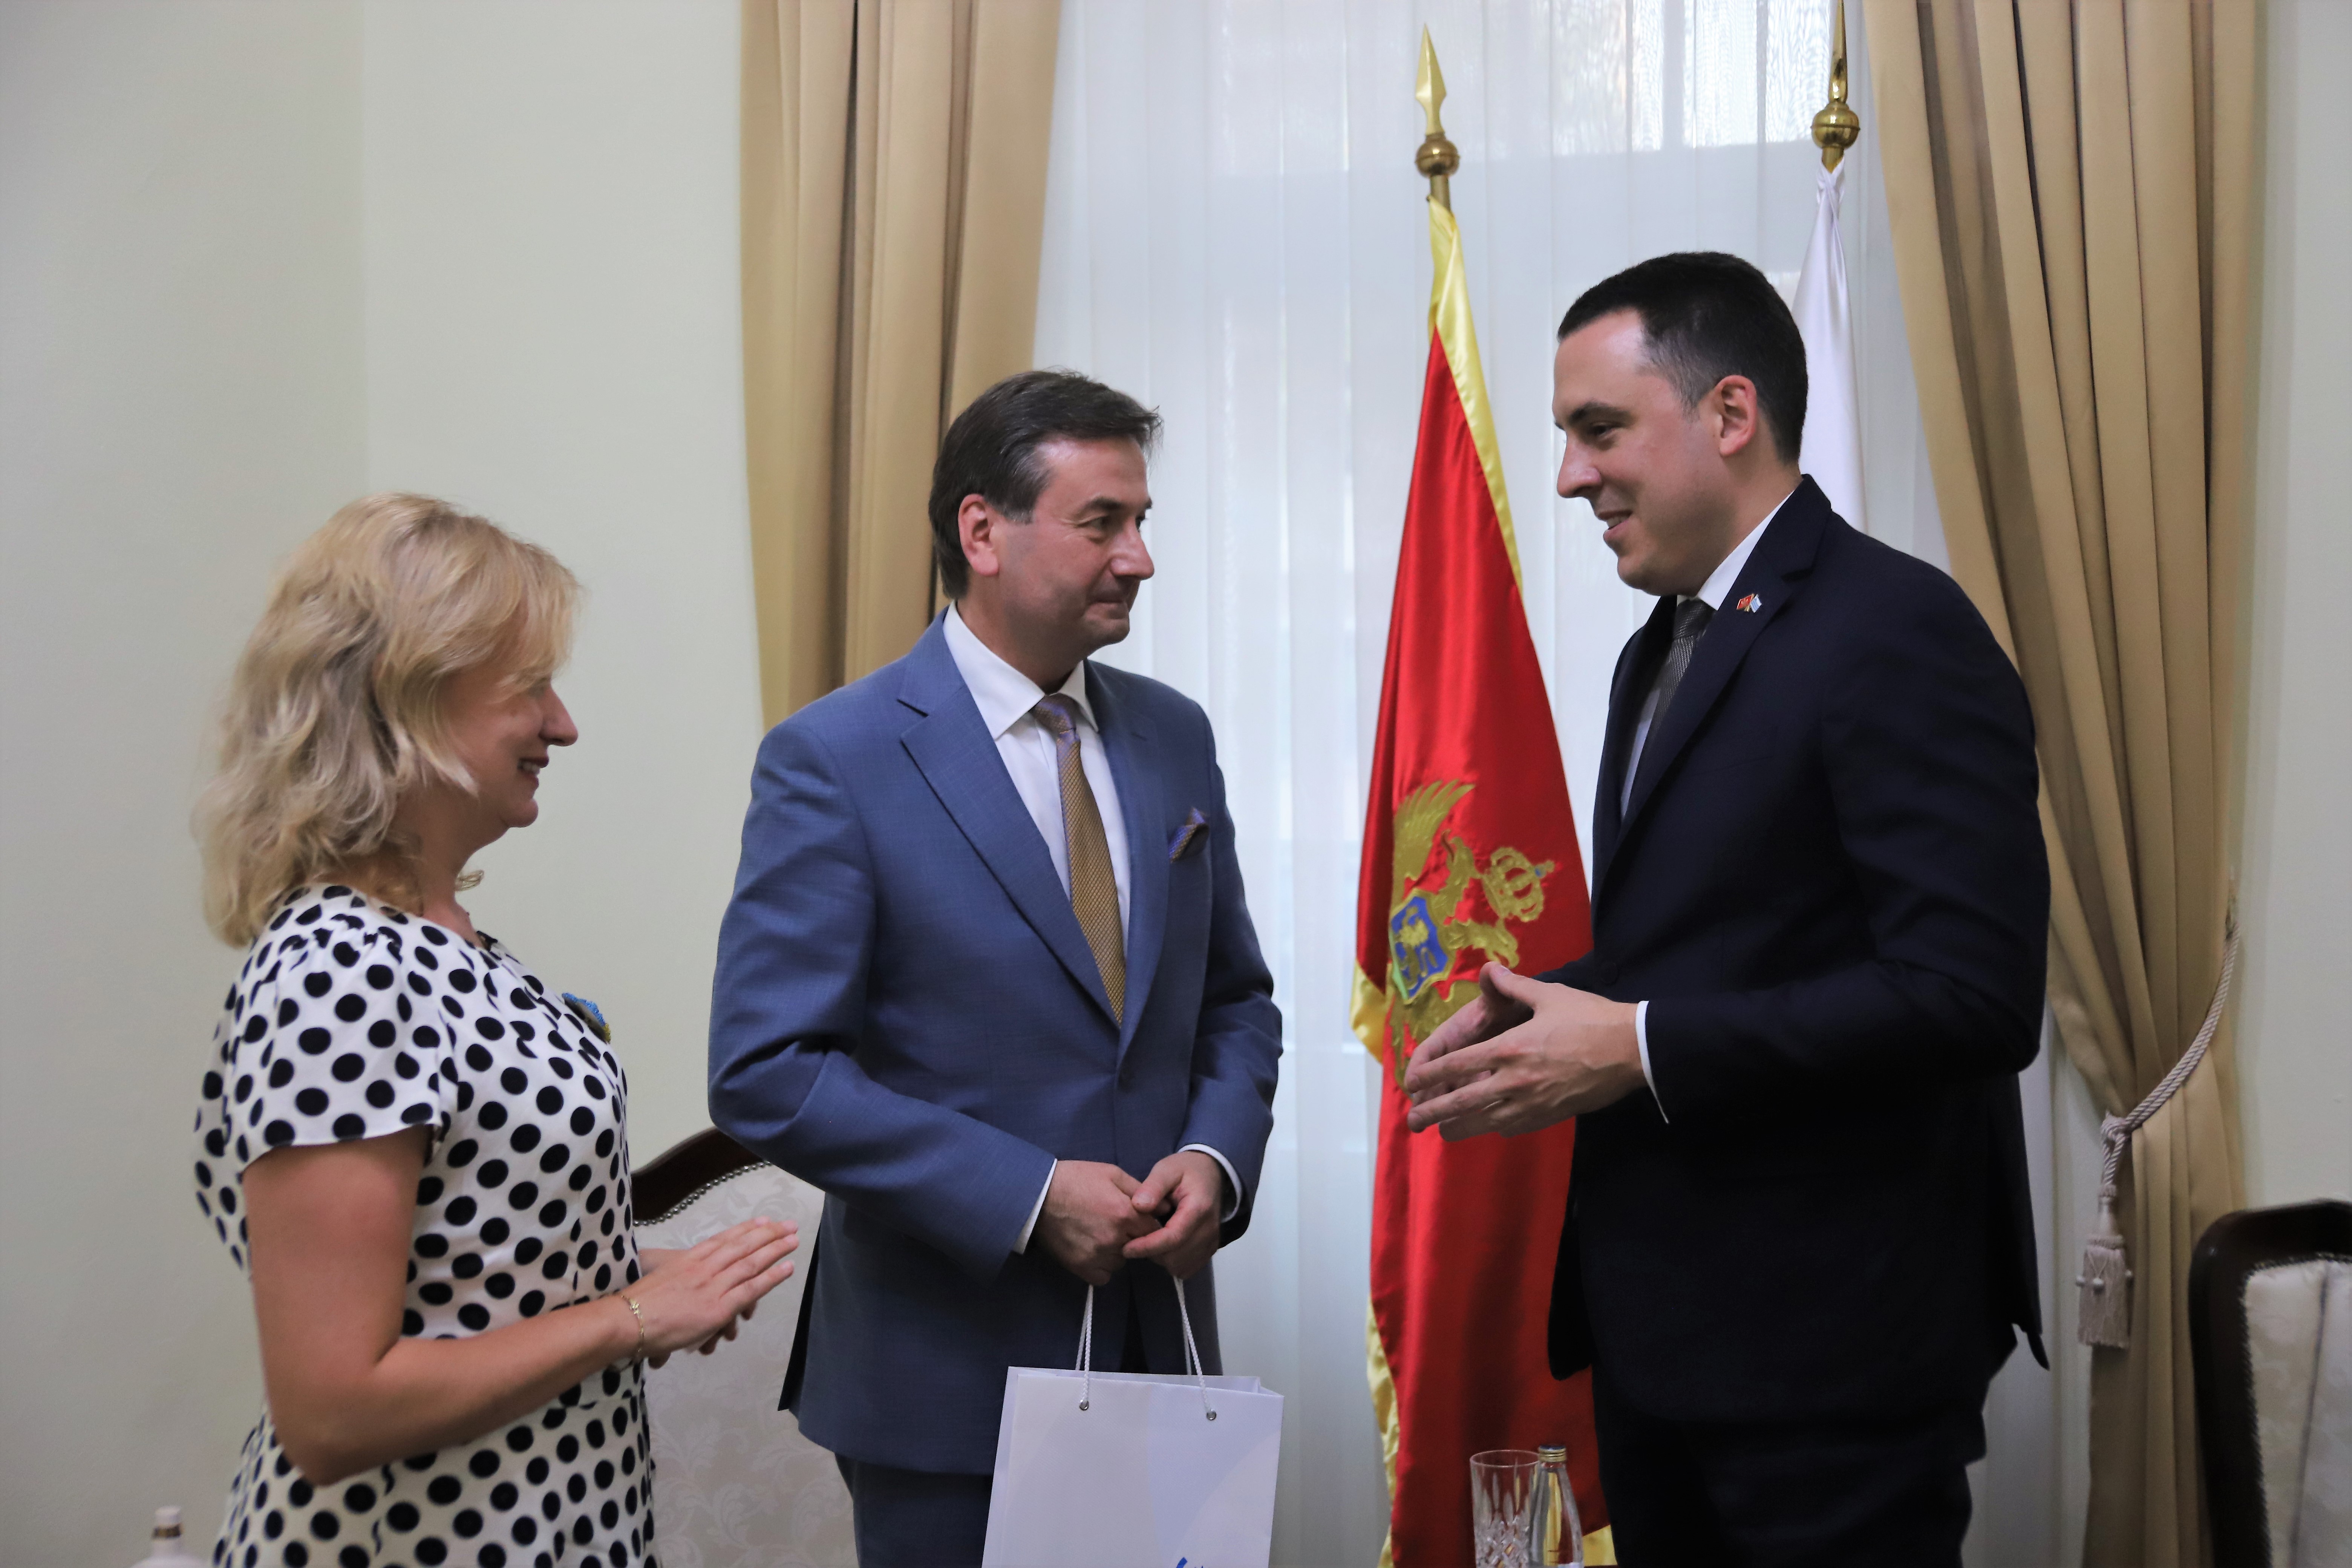 Vuković se sastao sa novoimenovanim ambasadorom Herasimenkom; Podgorica i u dobrim i u lošim vremenima prijatelj Ukrajine